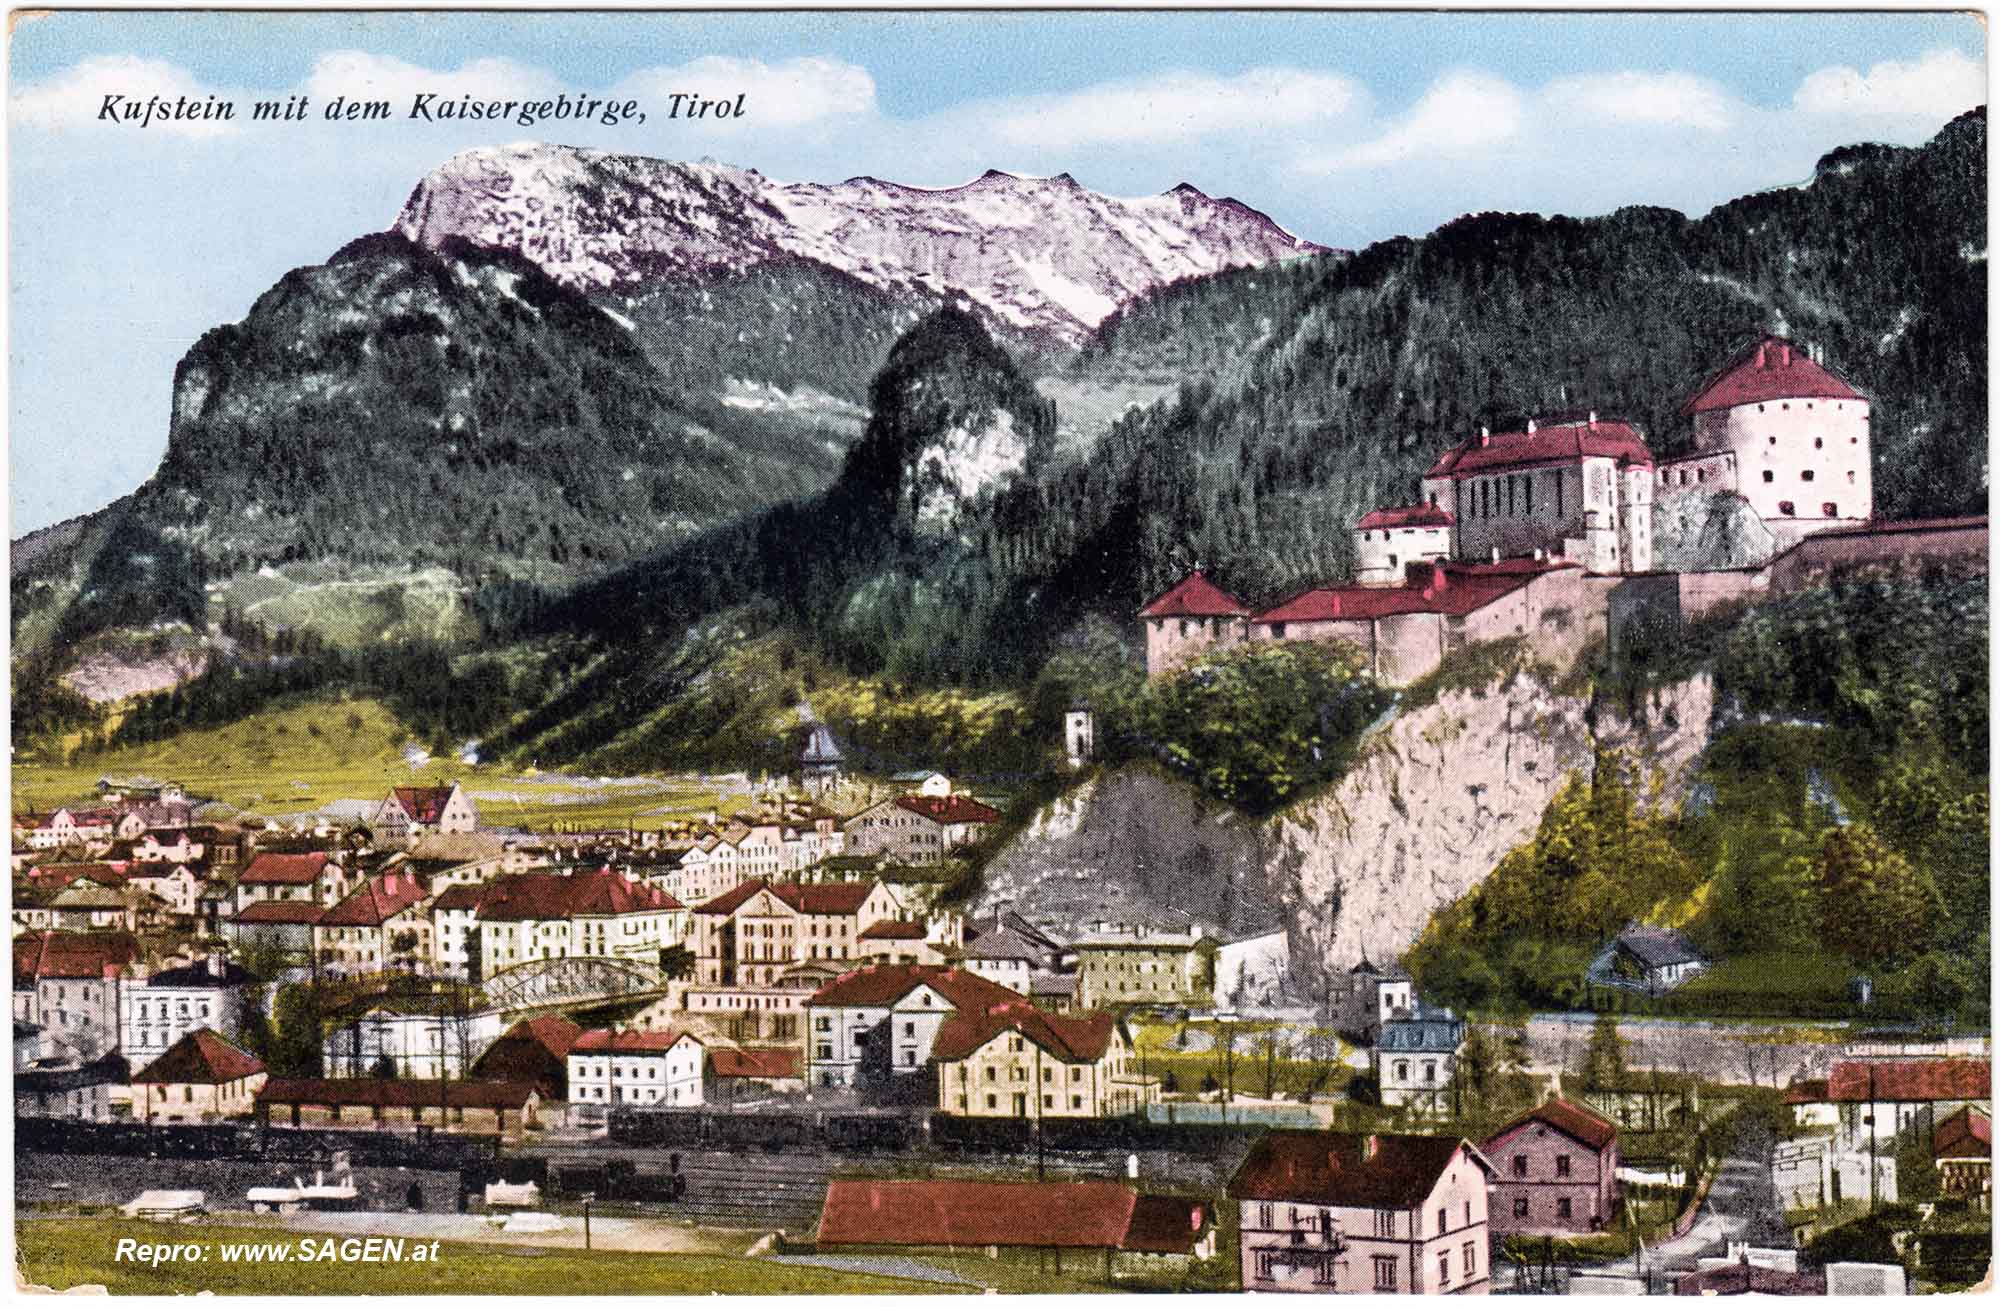 Kufstein mit dem Kaisergebirge